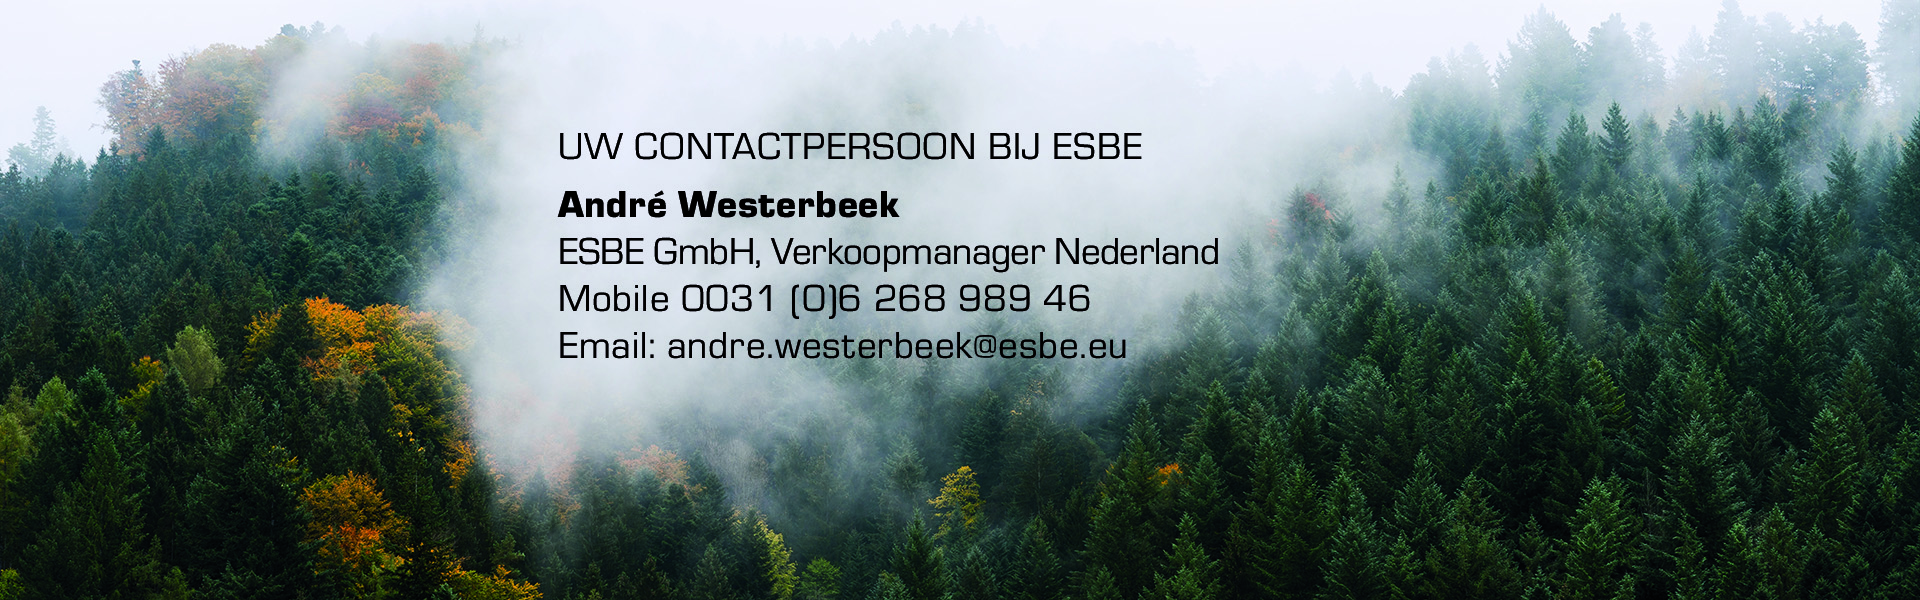 Andre Westerbeek - ESBE Een merk waarop je kunt vertrouwen en bouwen.jpg